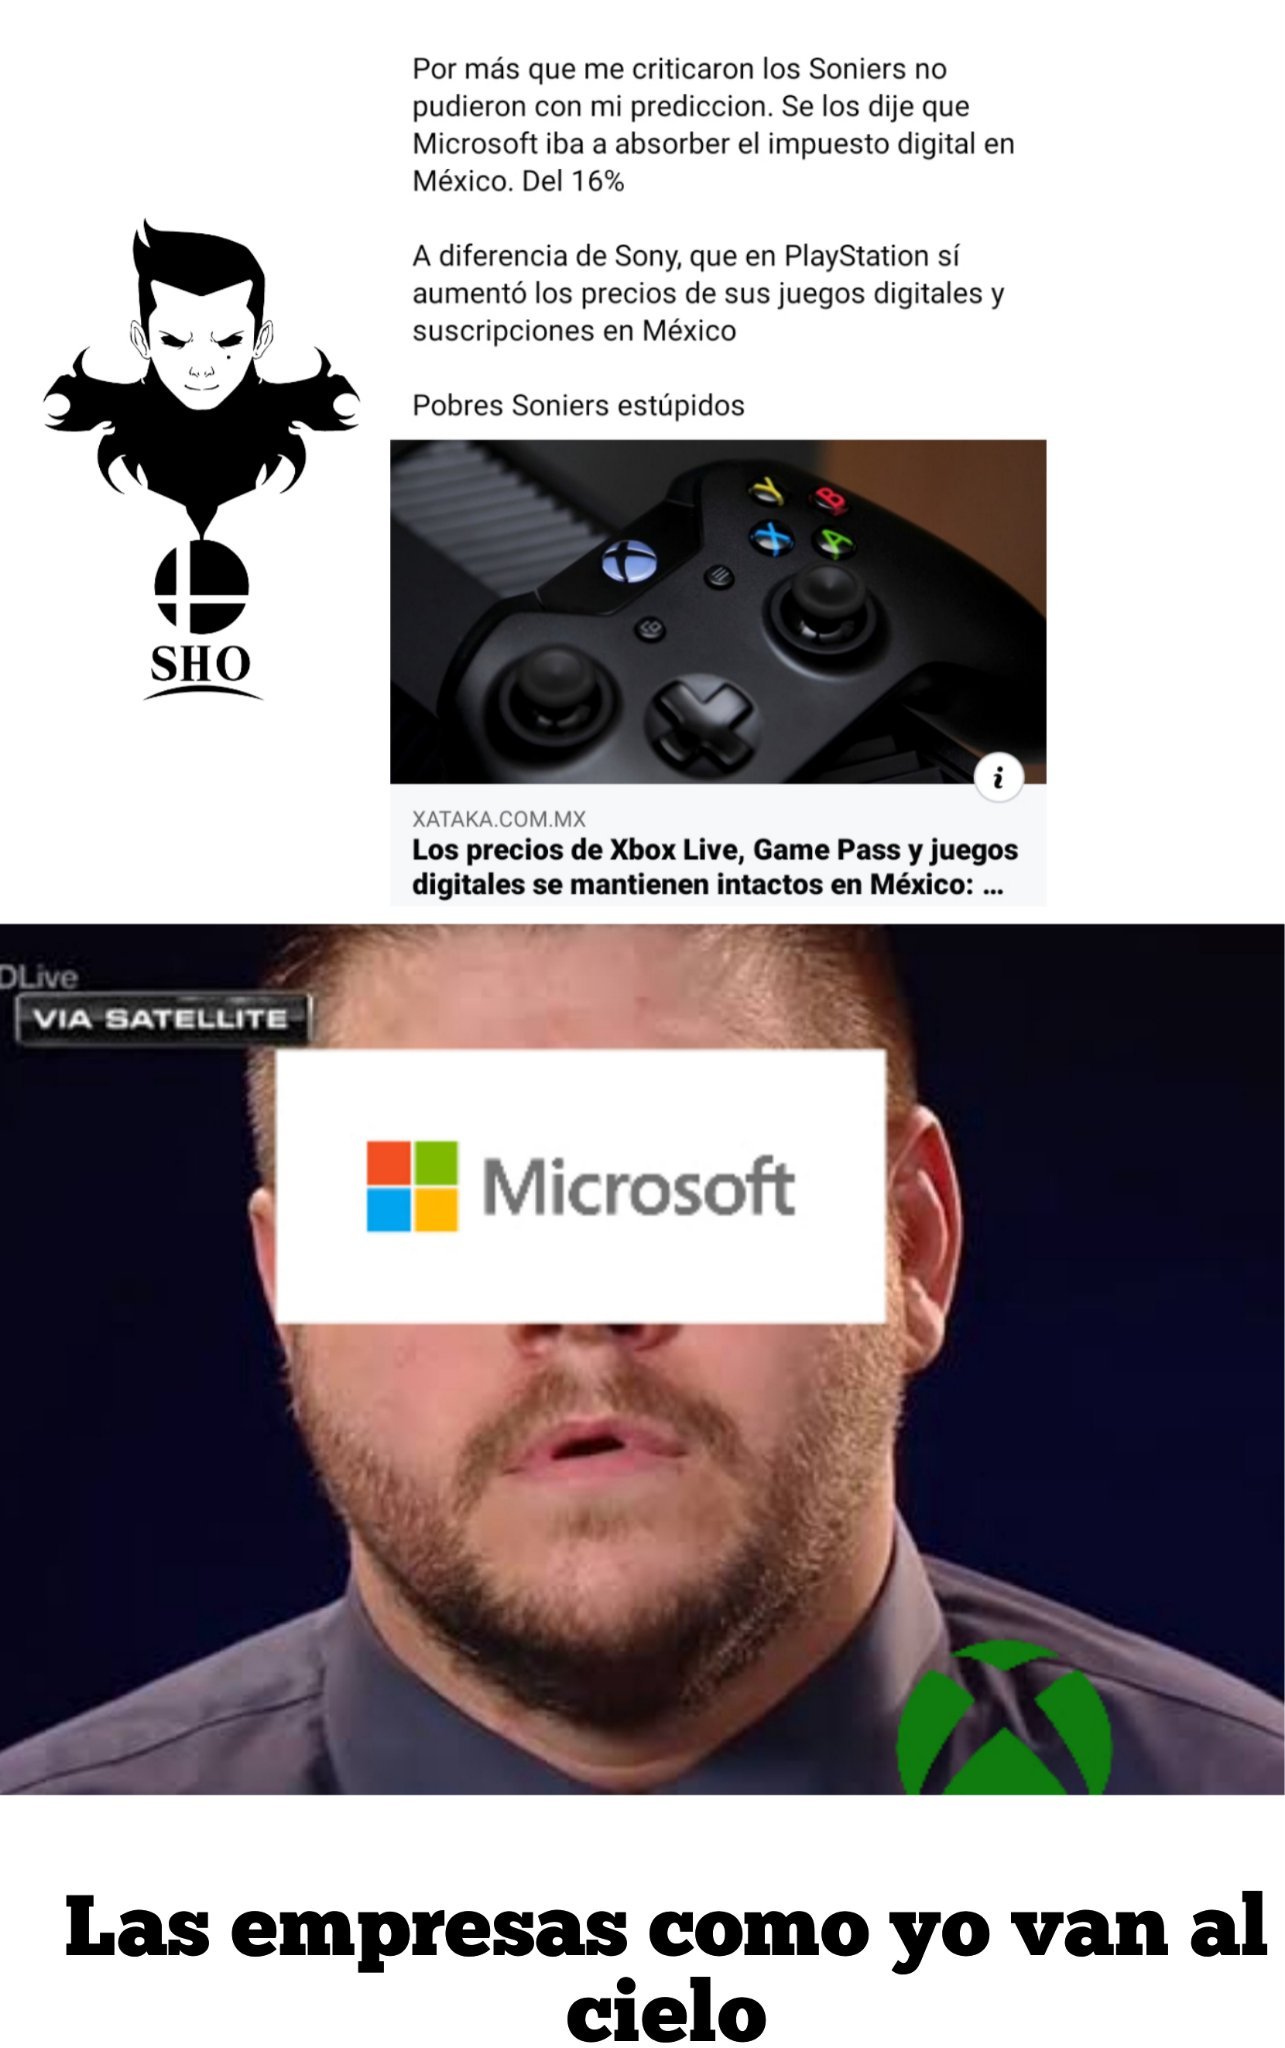 Microsoft rifandose en México x3 - meme